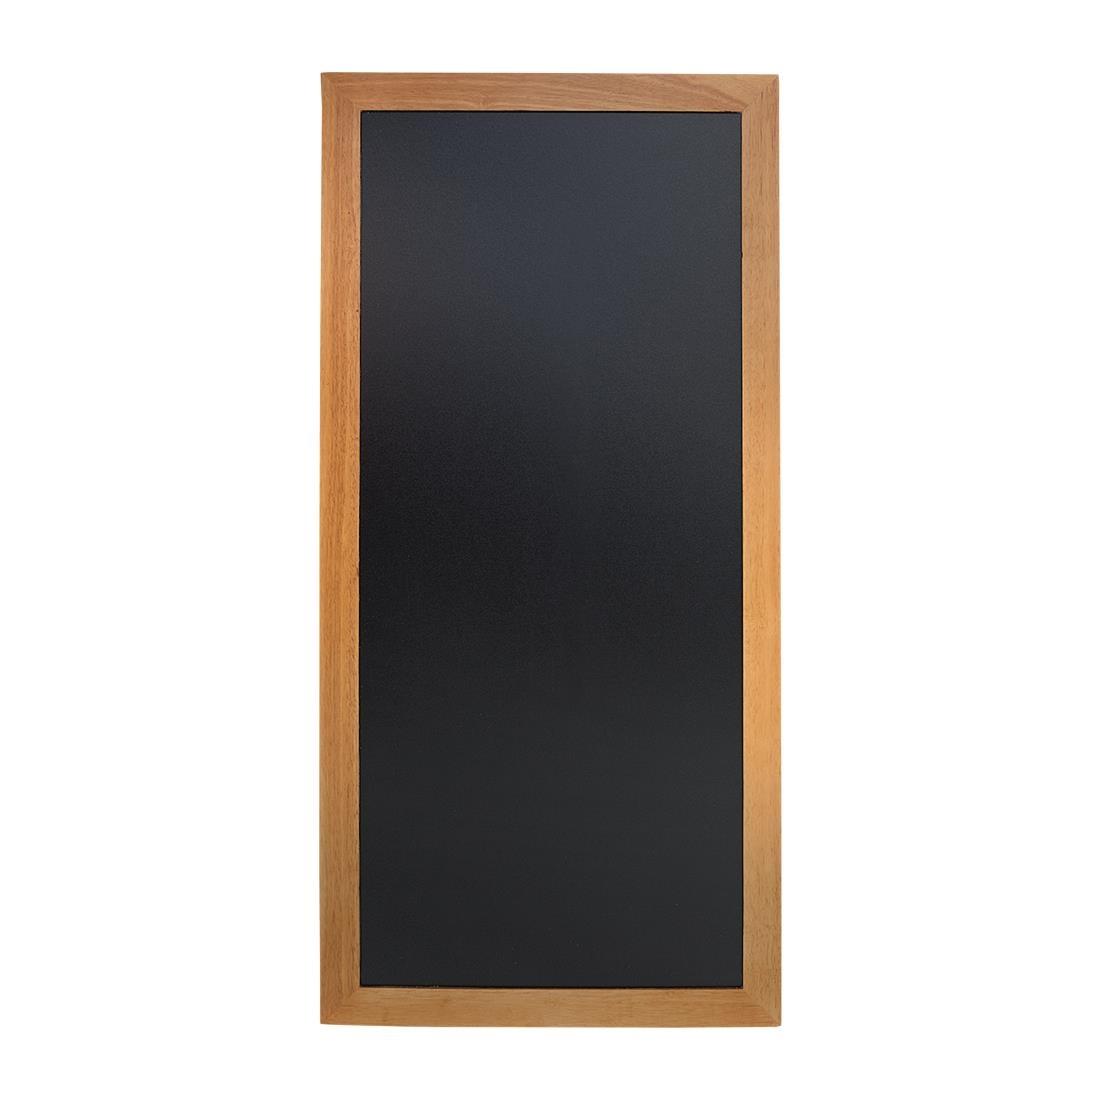 Securit Slim Wall Mounted Blackboard 1200 x 560mm Teak - Y860  - 1